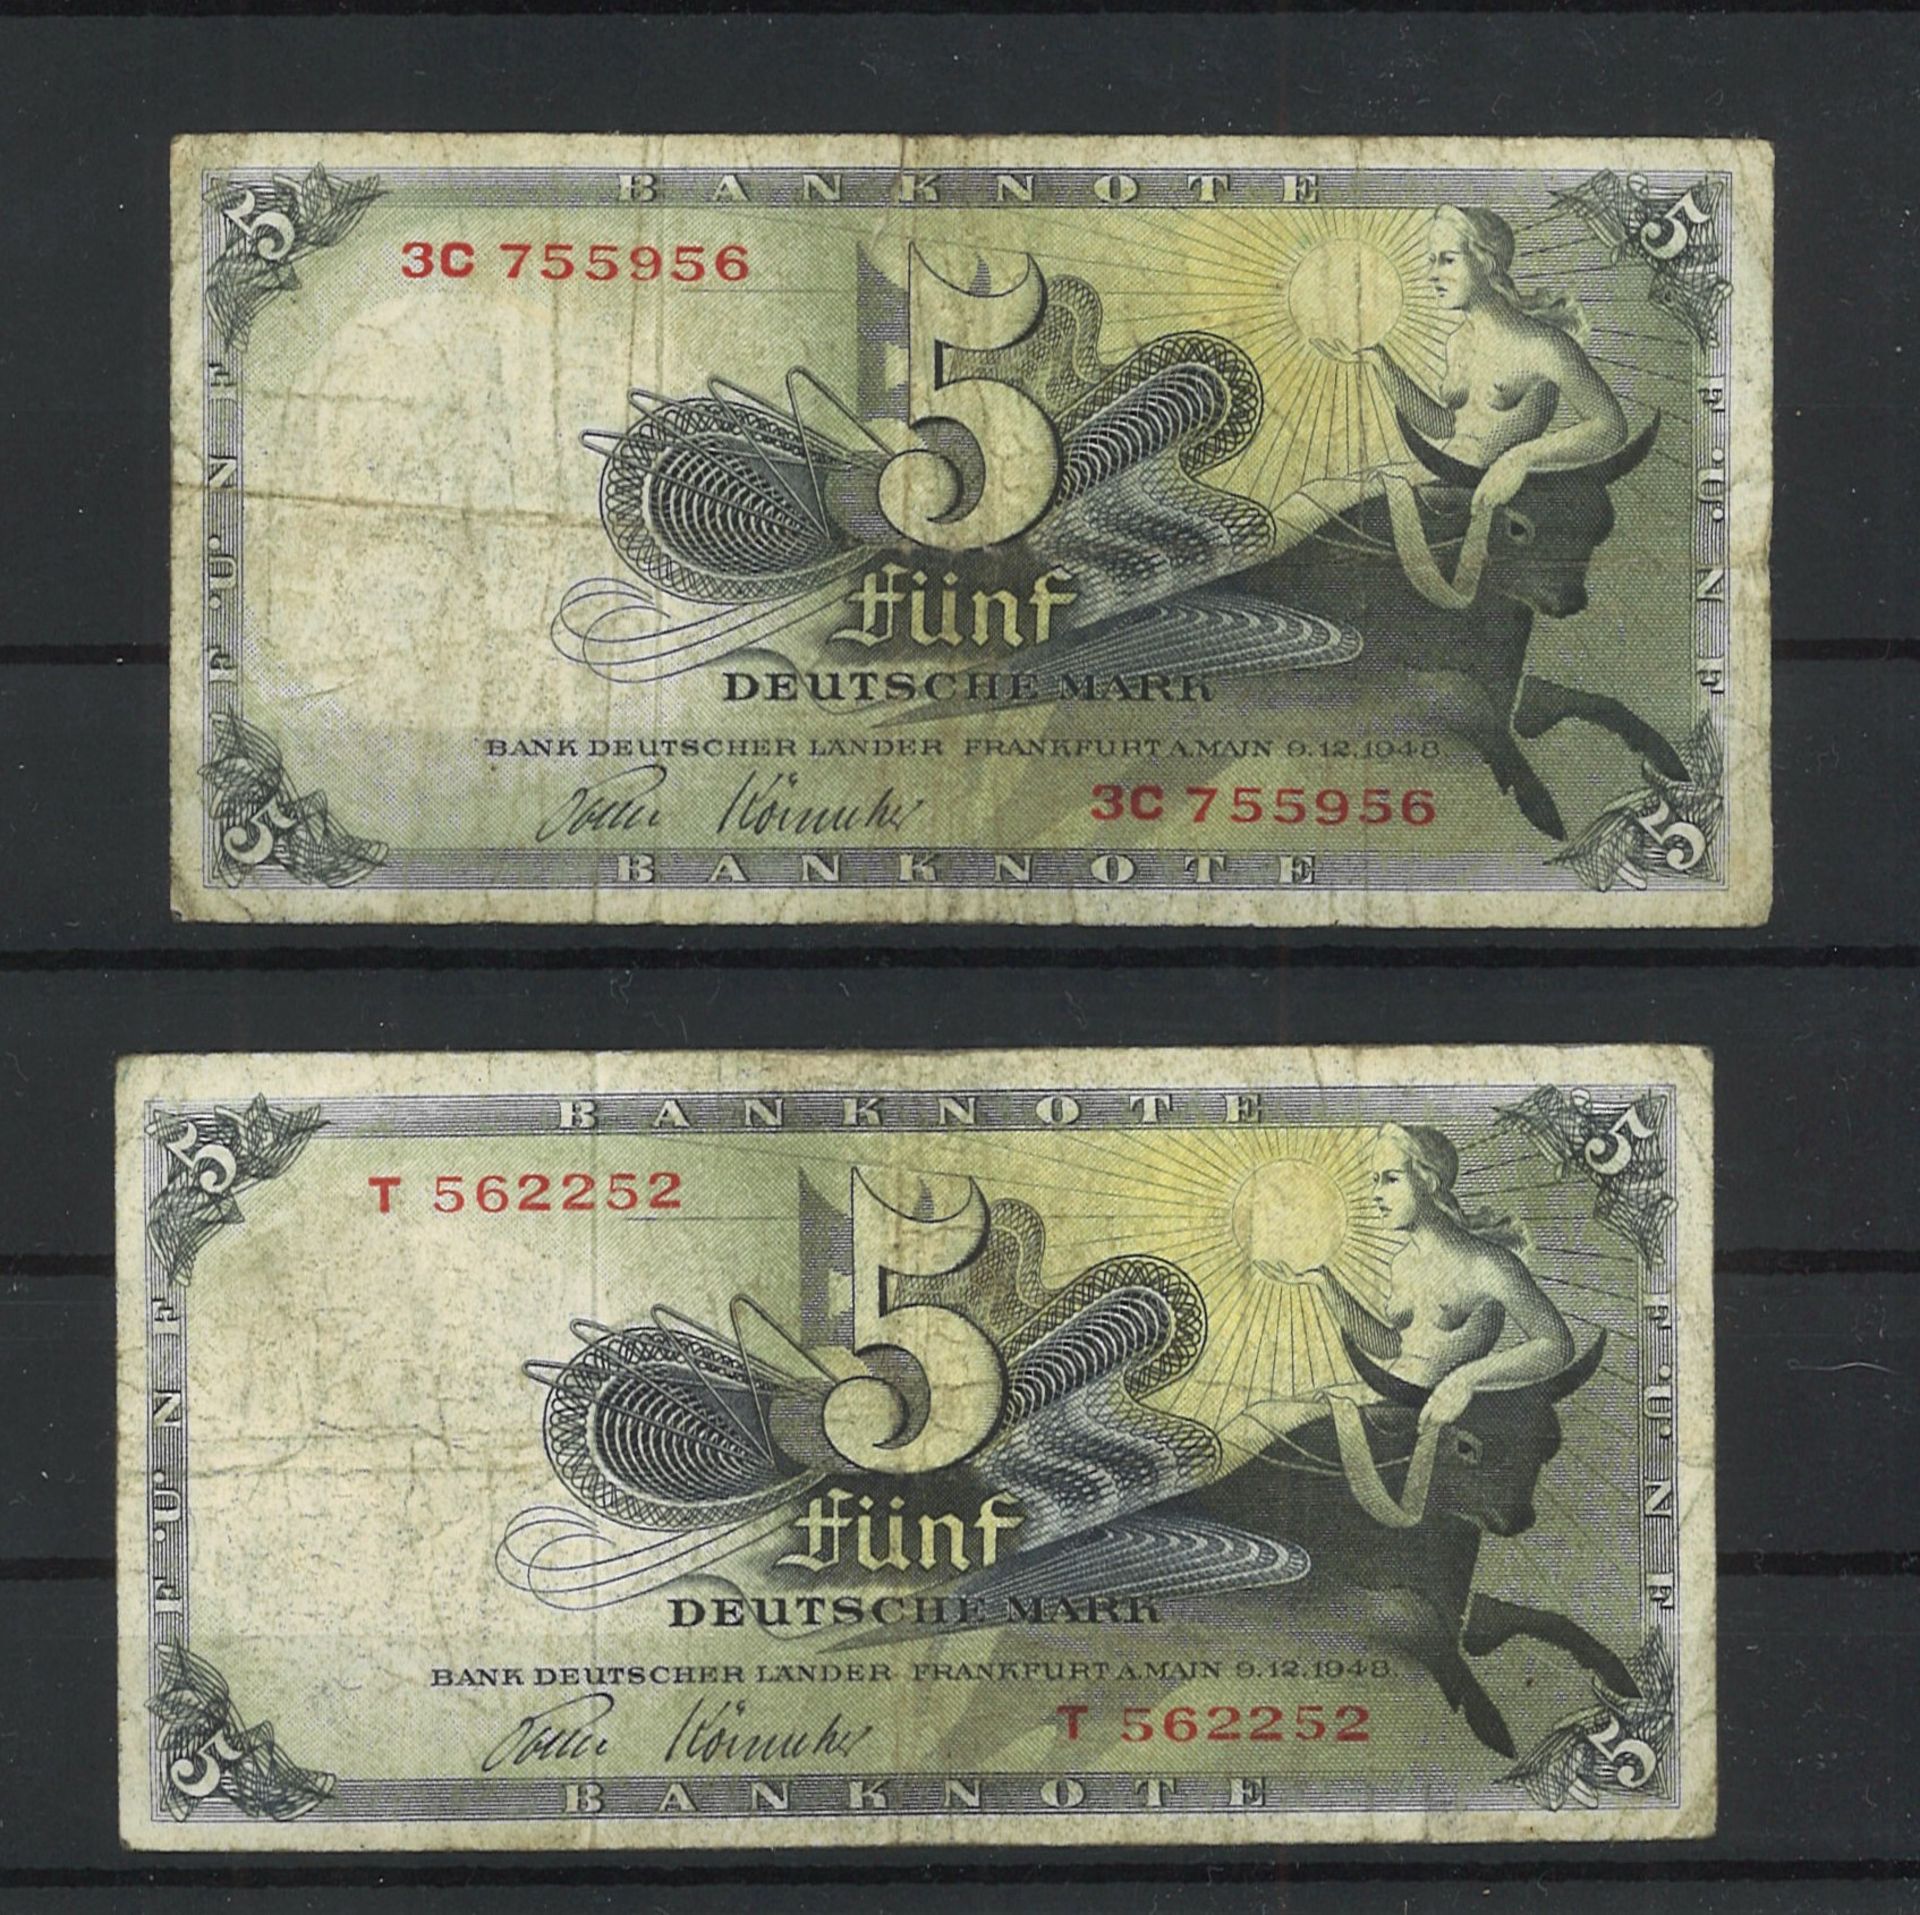 2x Bank deutscher Länder 5 Mark Scheine, 9.12.1948. Zustand stark gebraucht. Bitte besichtigen!